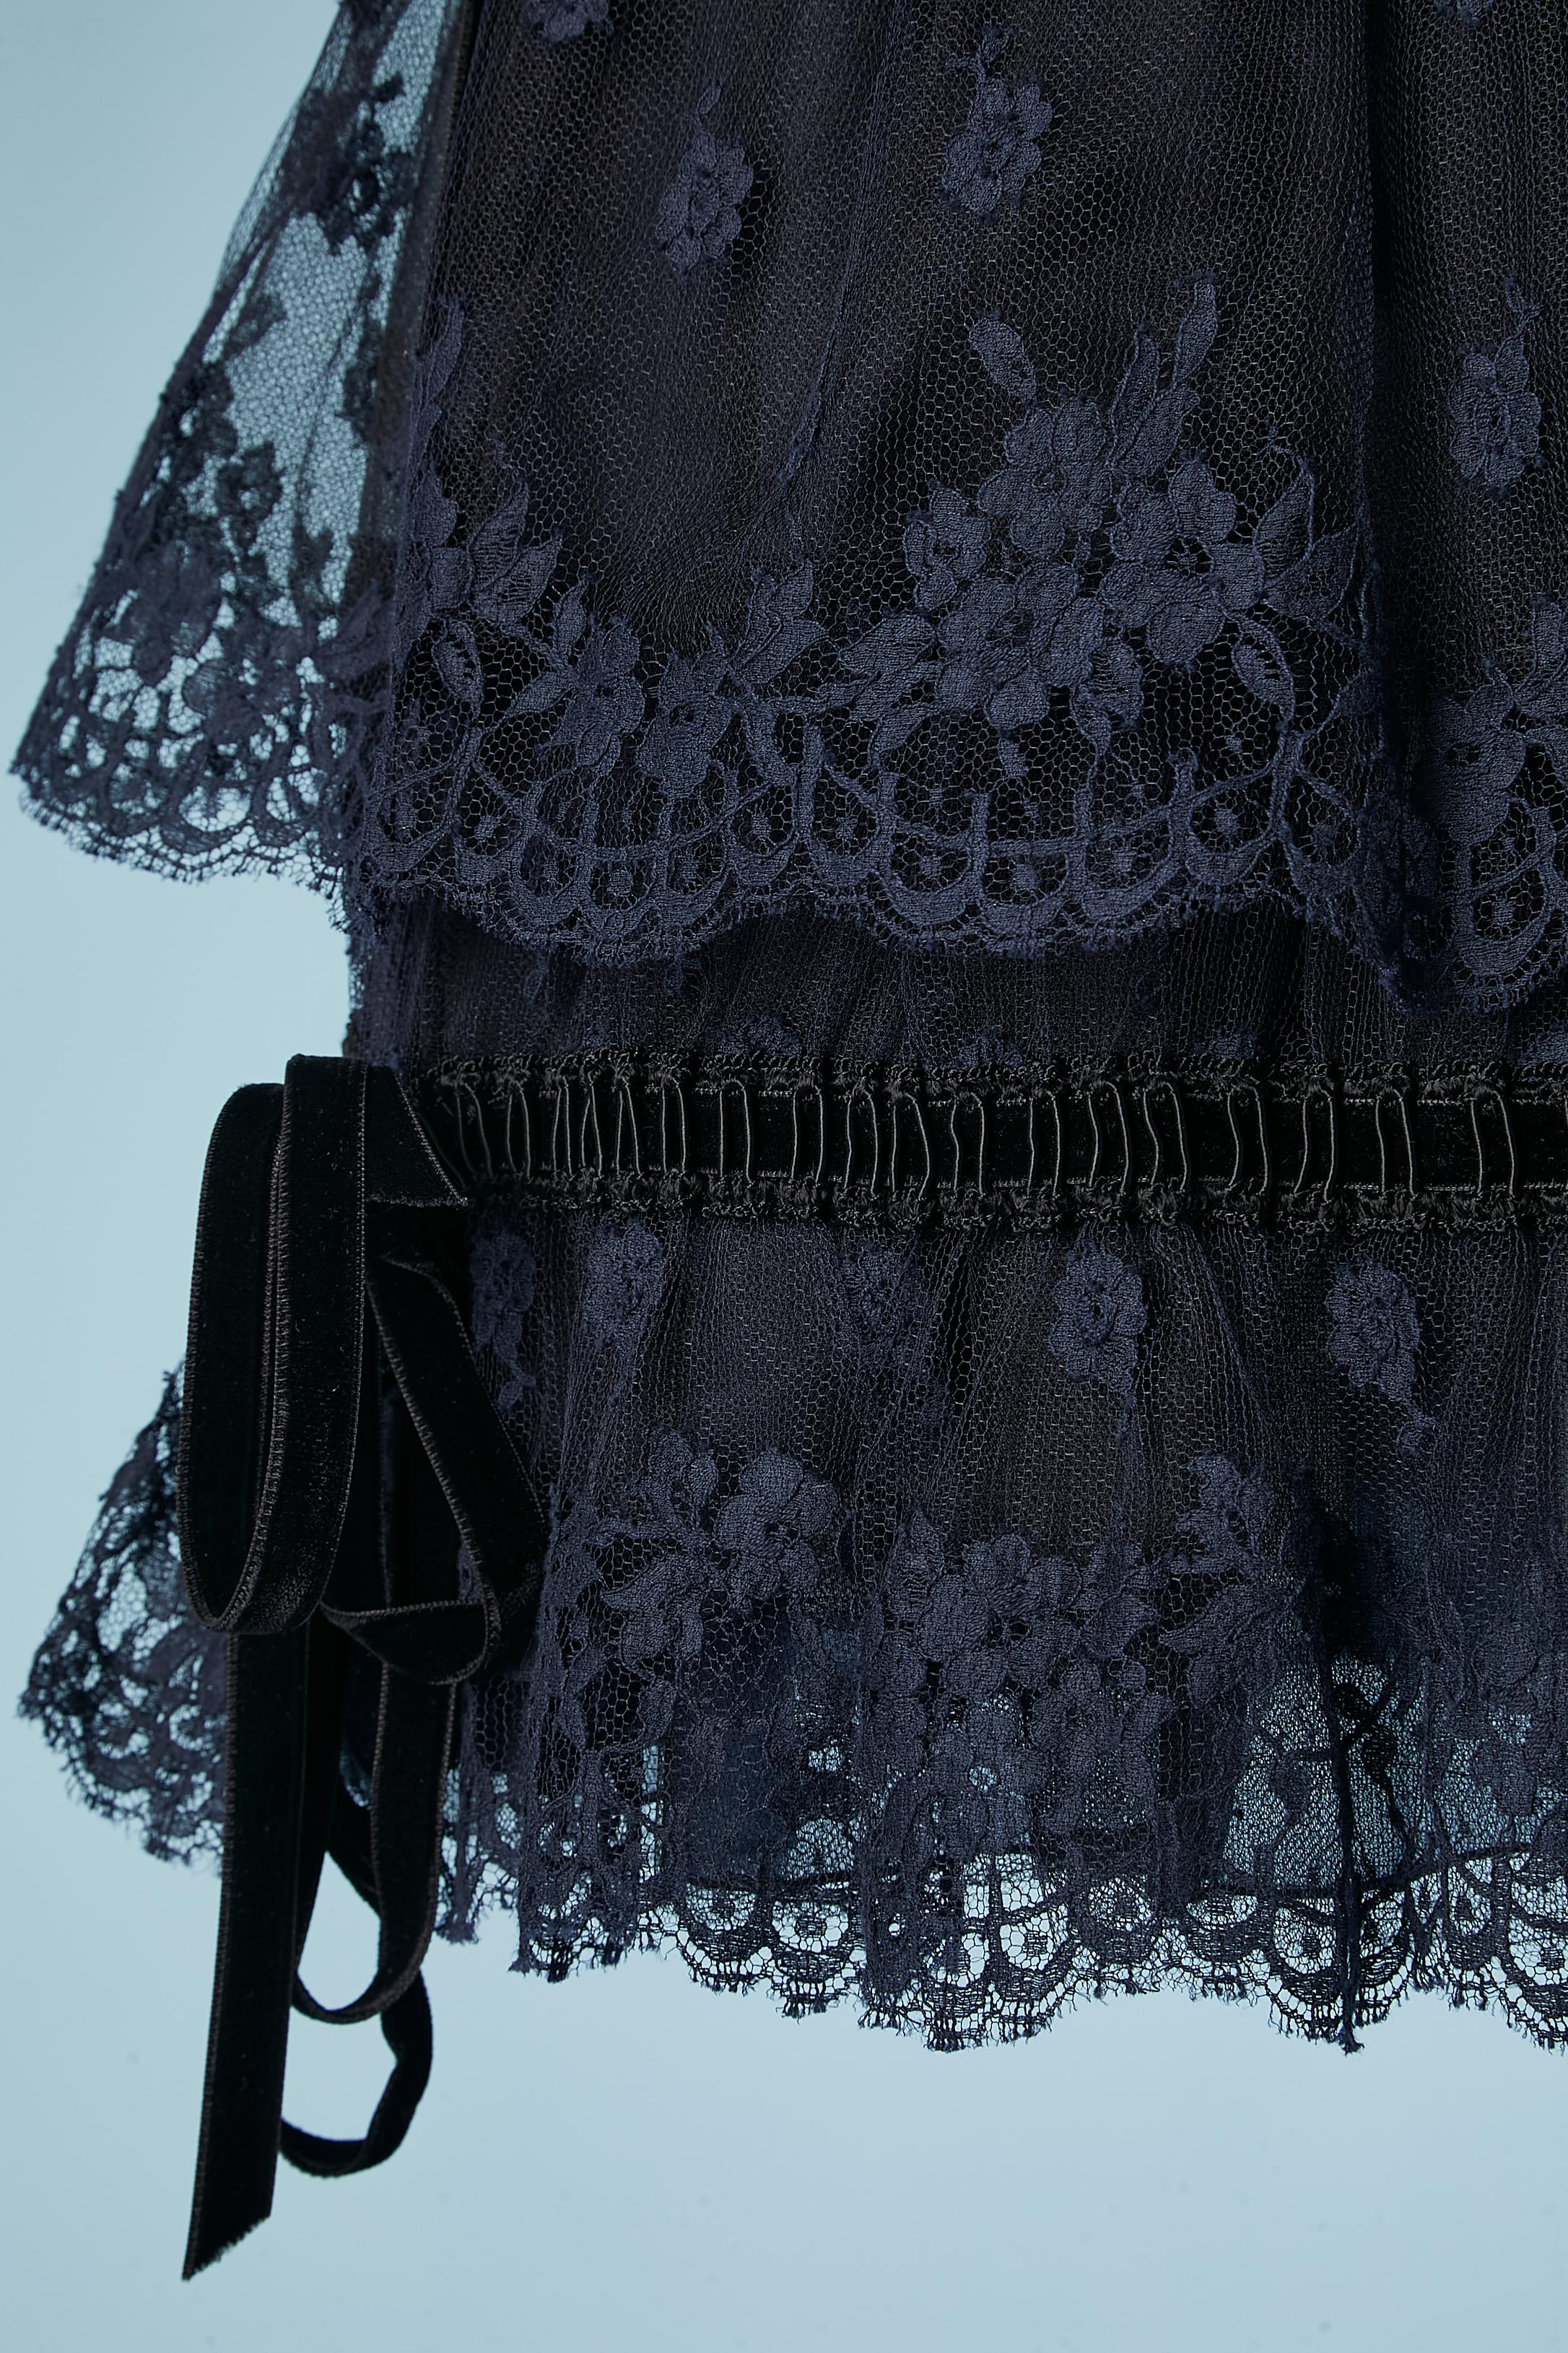 lace composition